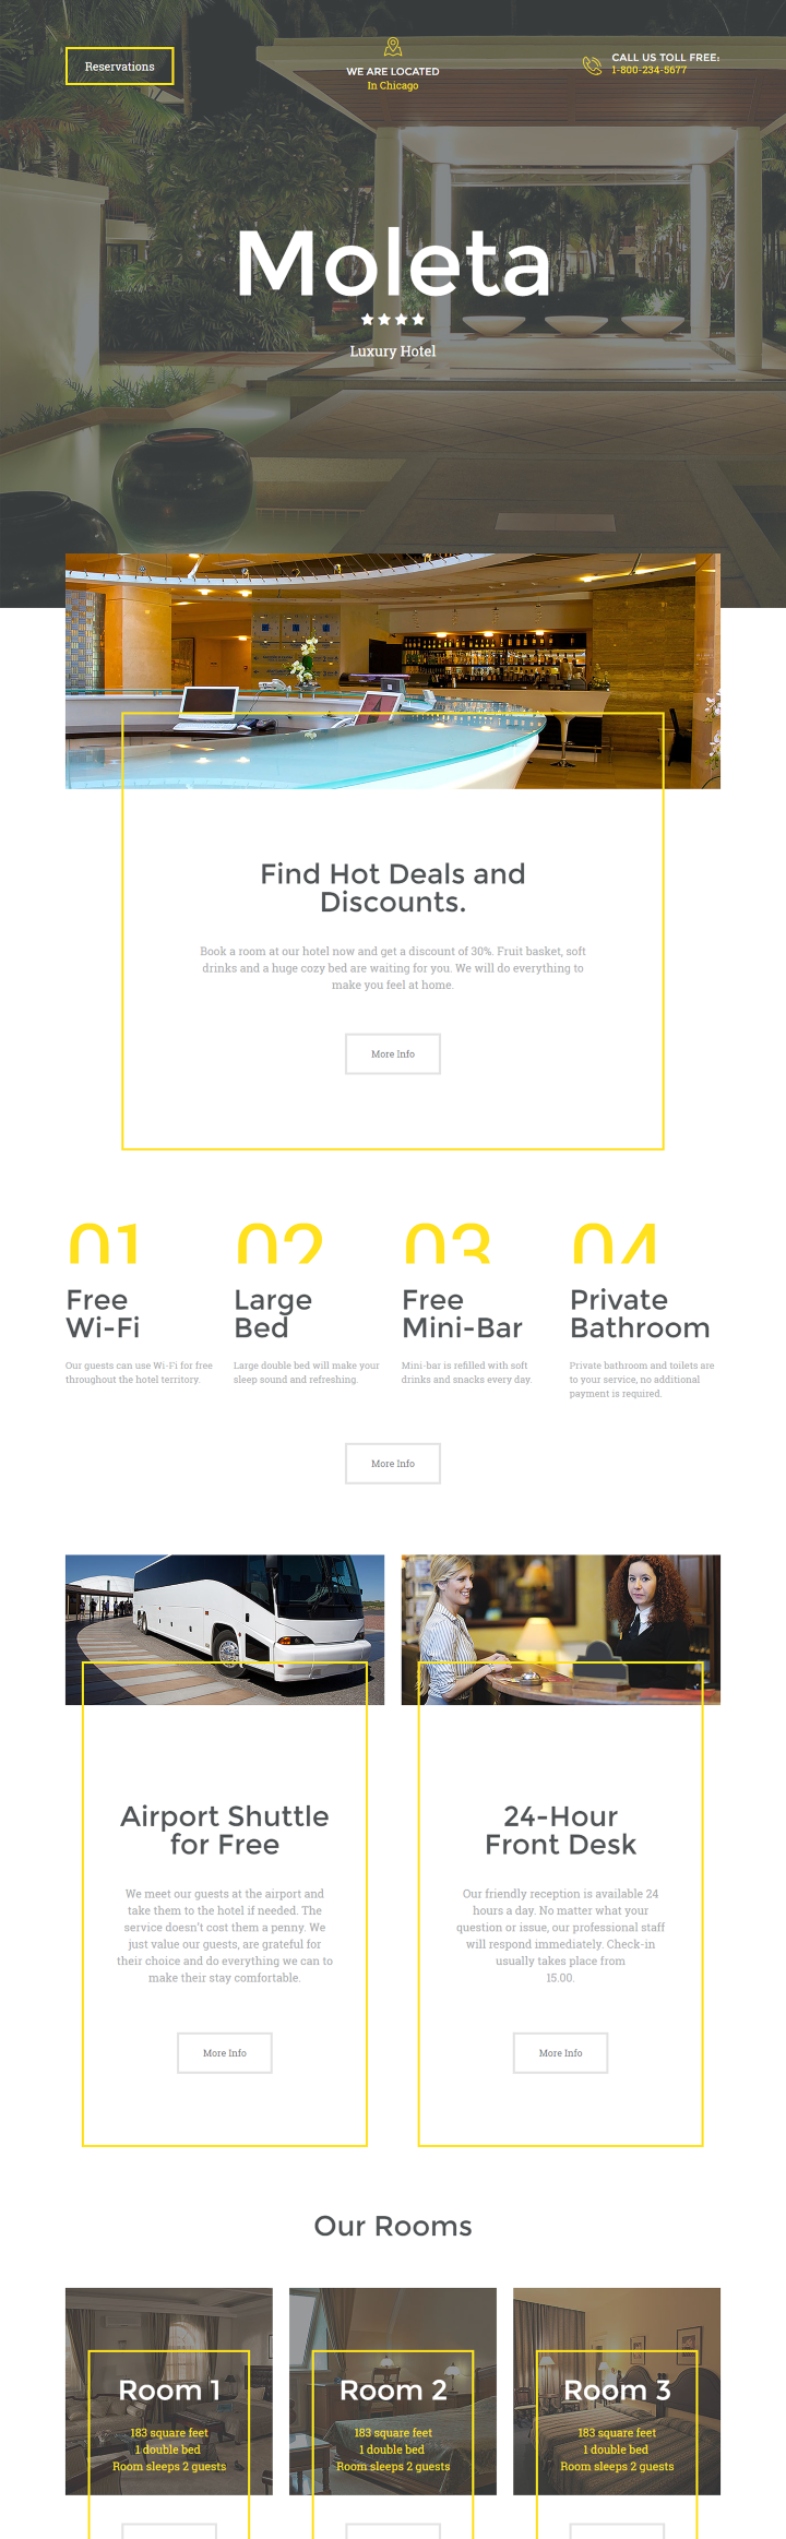 Moleta Luxury como ejemplo de landing page para tener feedback en hotel